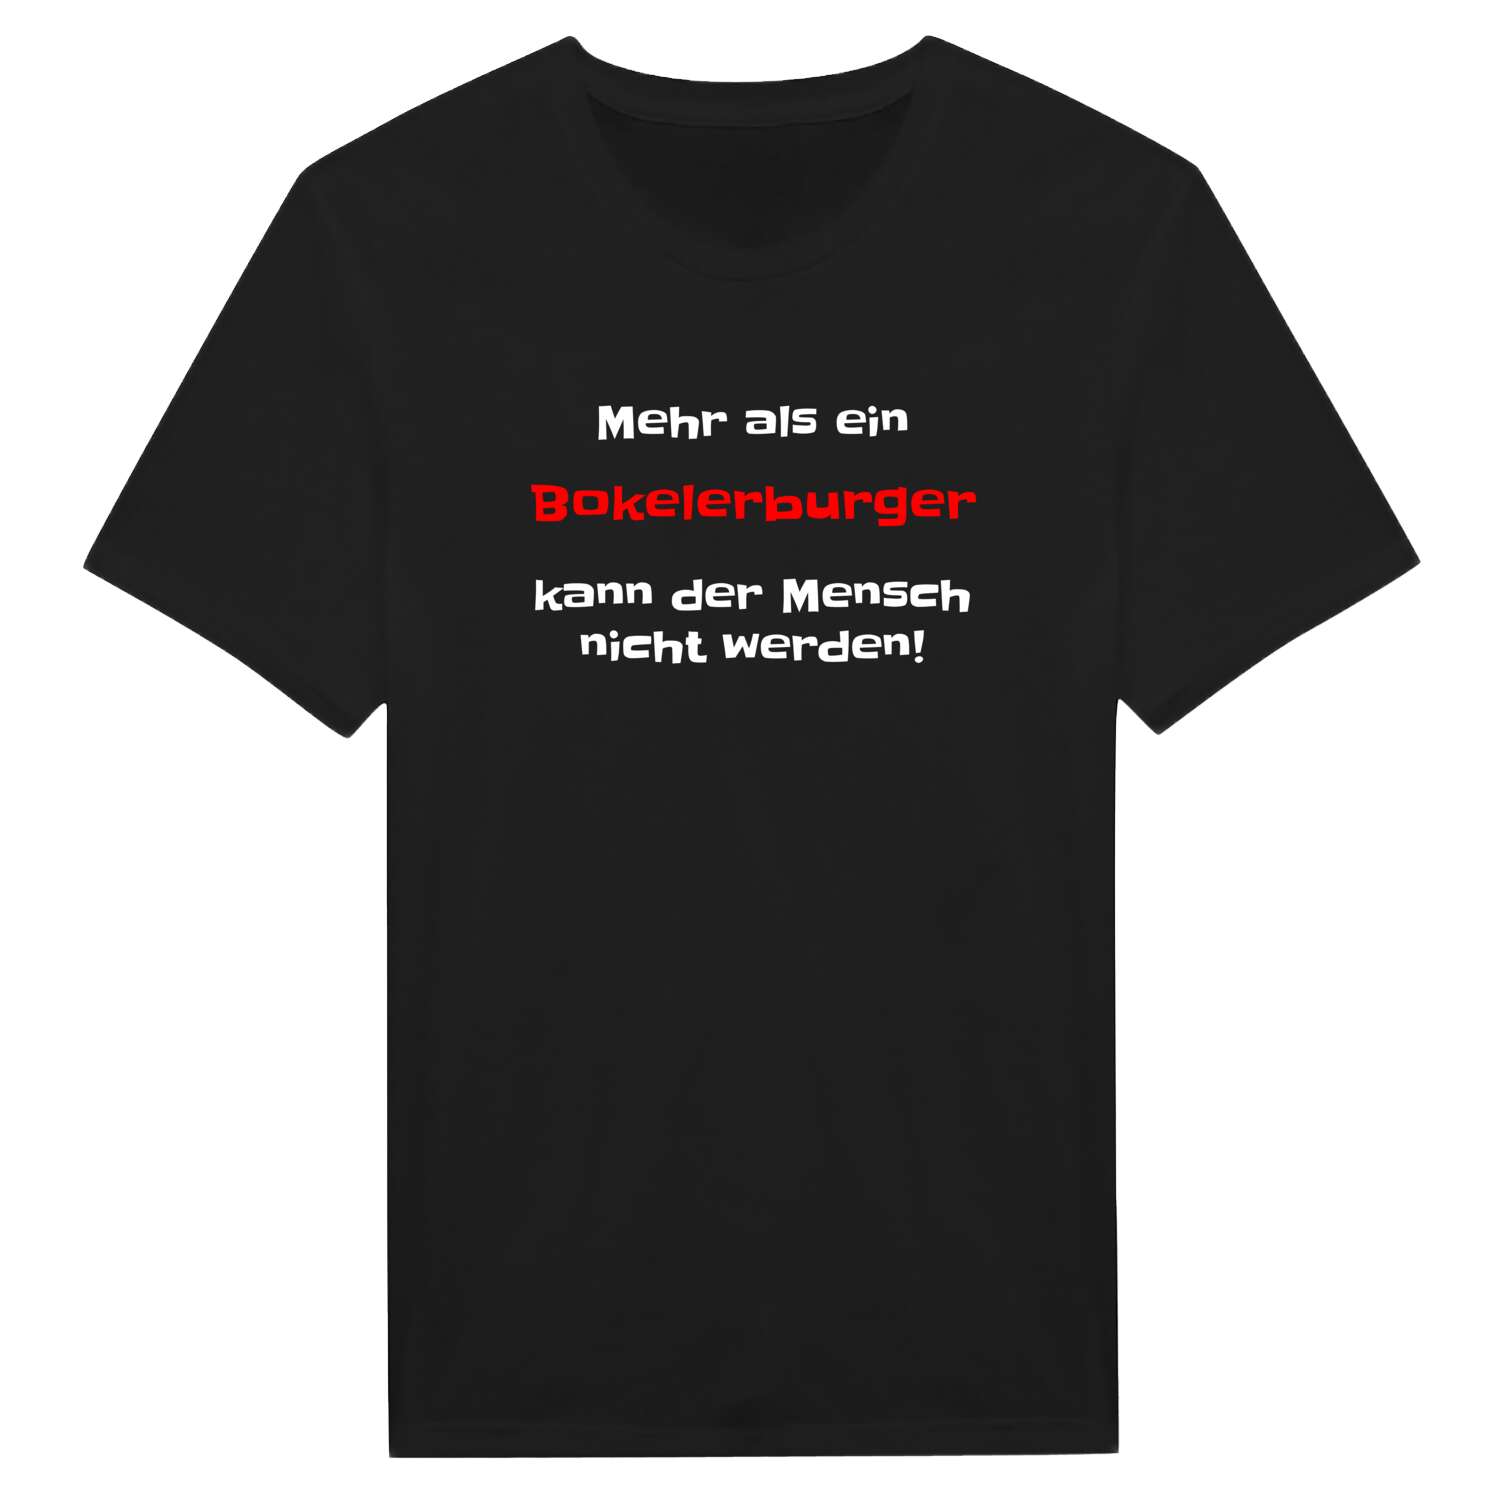 Bokelerburg T-Shirt »Mehr als ein«